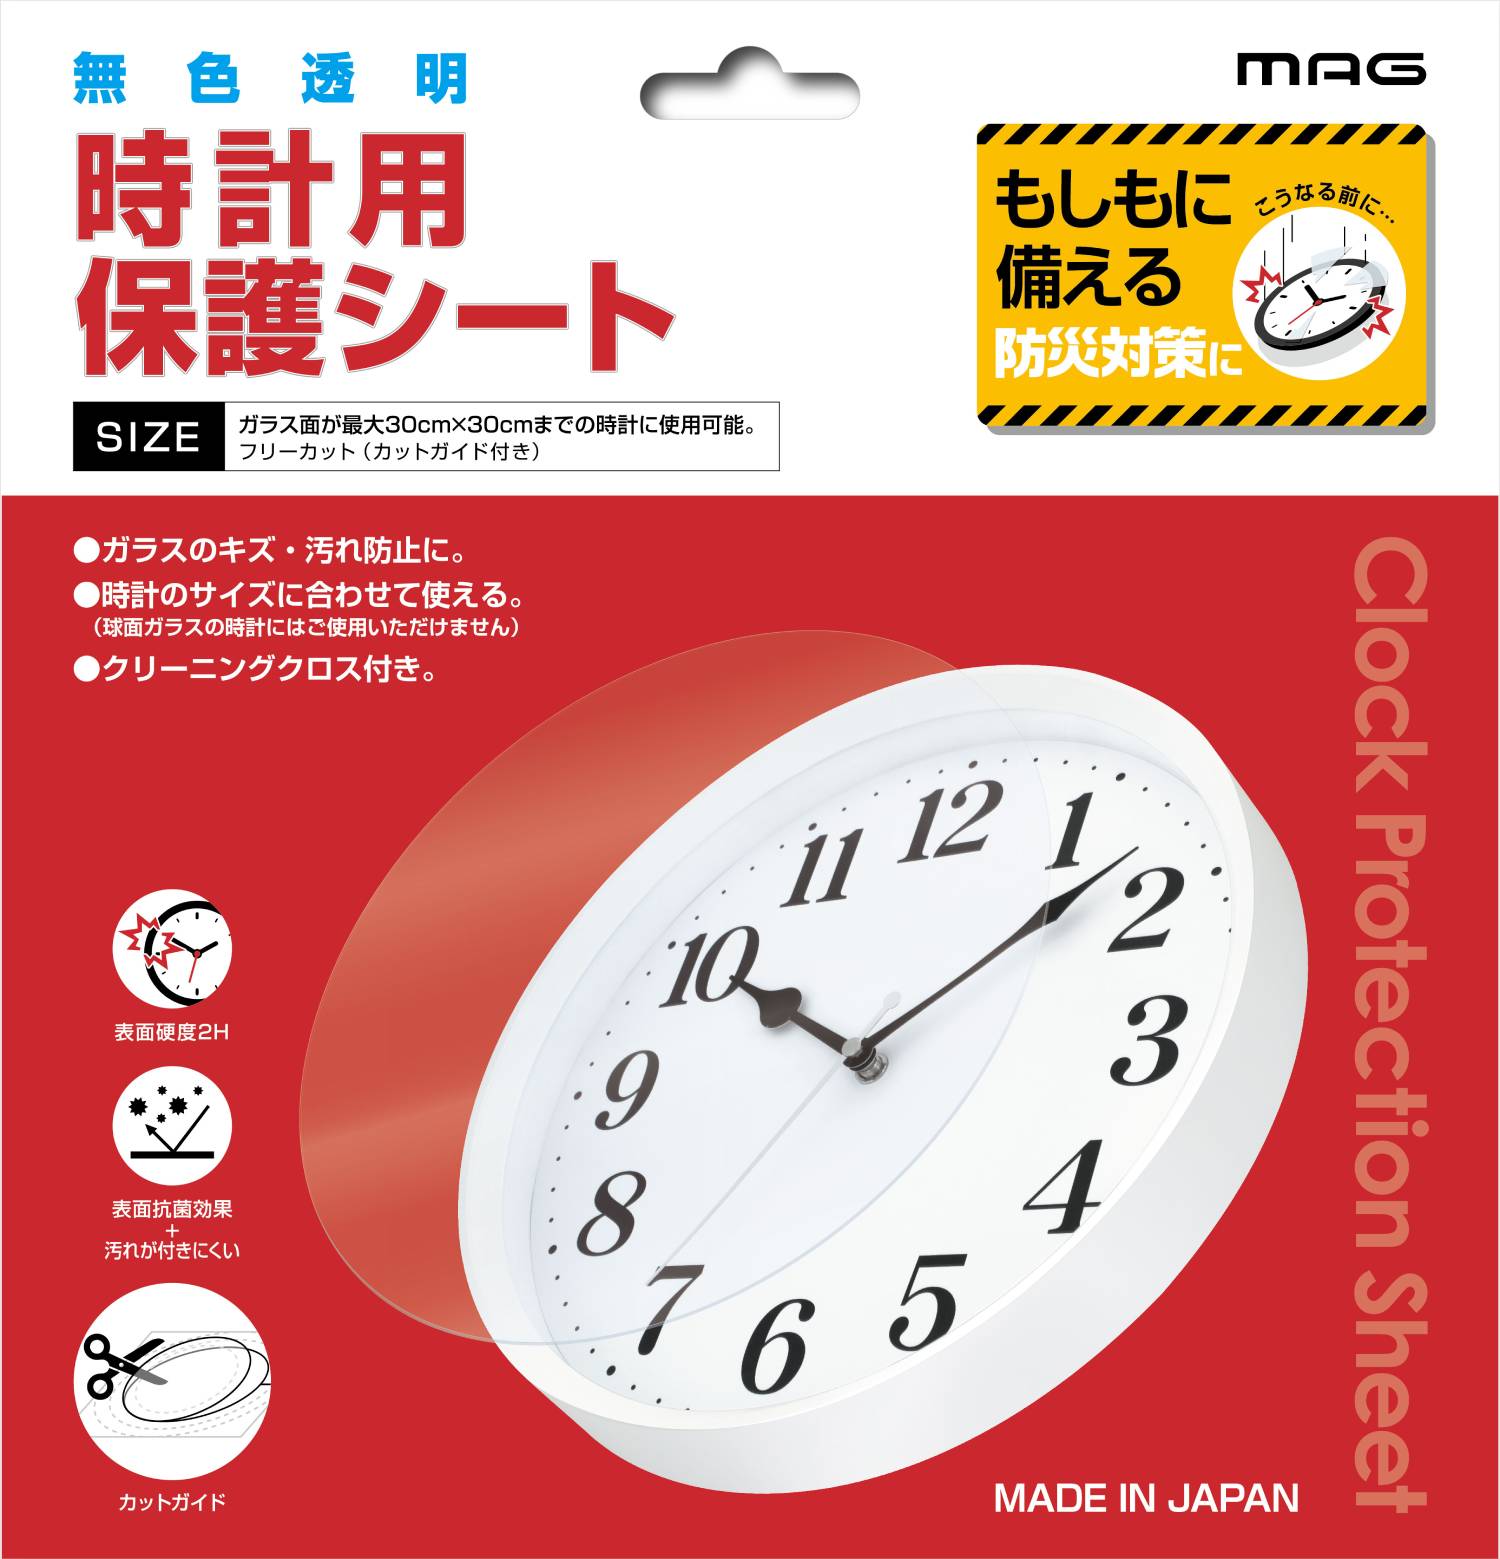 321円 売れ筋商品 ノア精密 MAG マグ 時計用スタンド N-033 WH